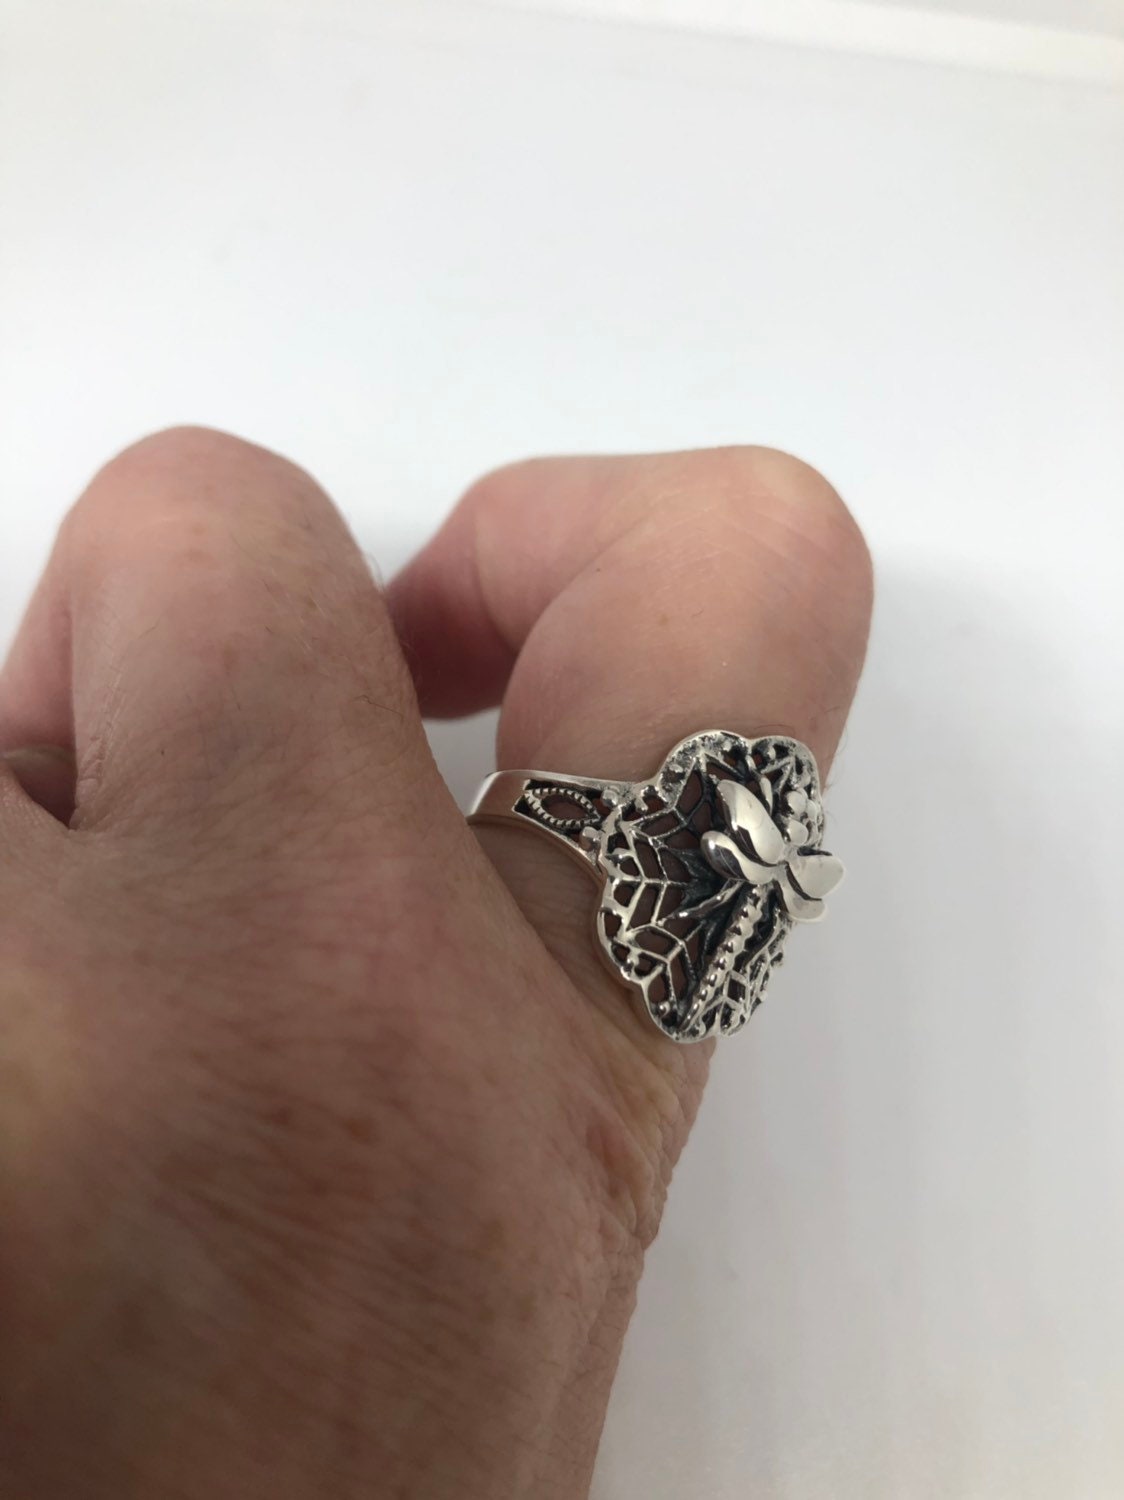 Vintage Dragonfly Ring 925 Sterling Silver Antiqued Filigree